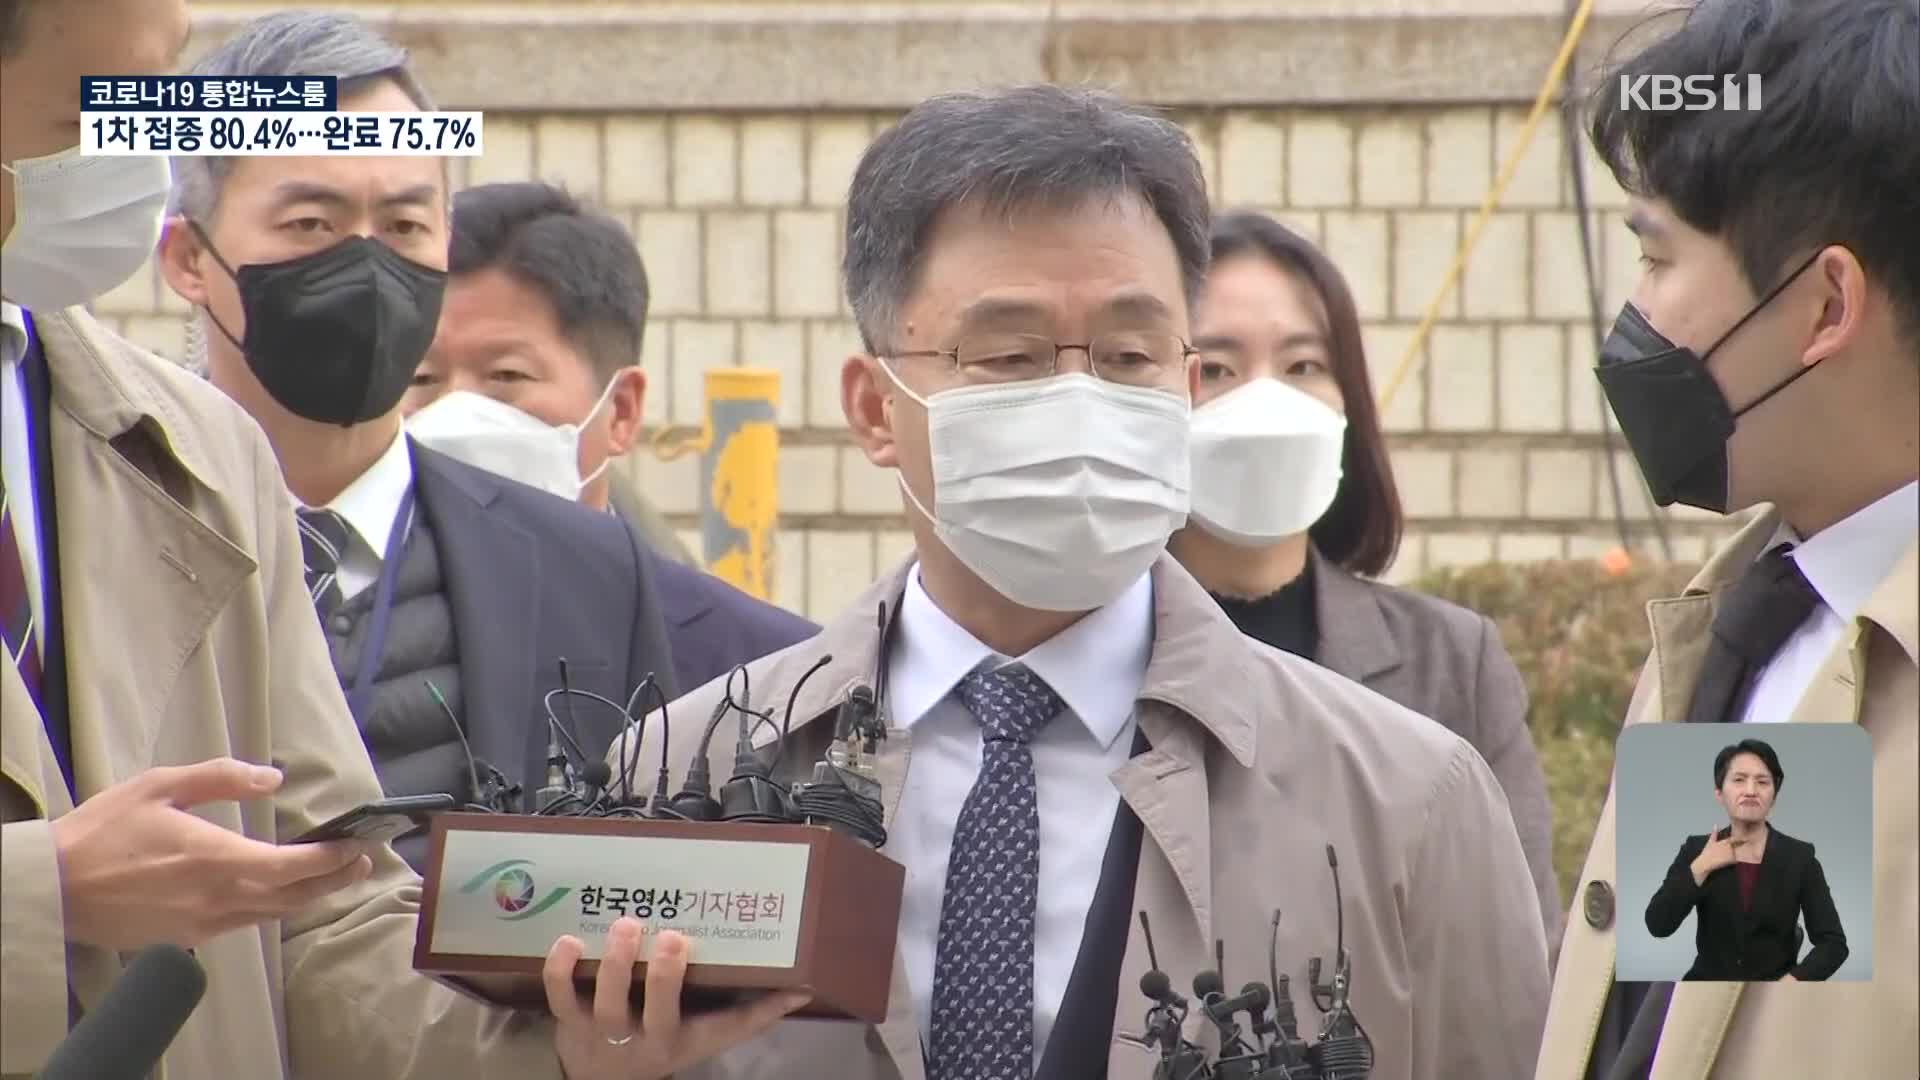 김만배 두번째 구속심사…남욱·정민용도 구속 기로